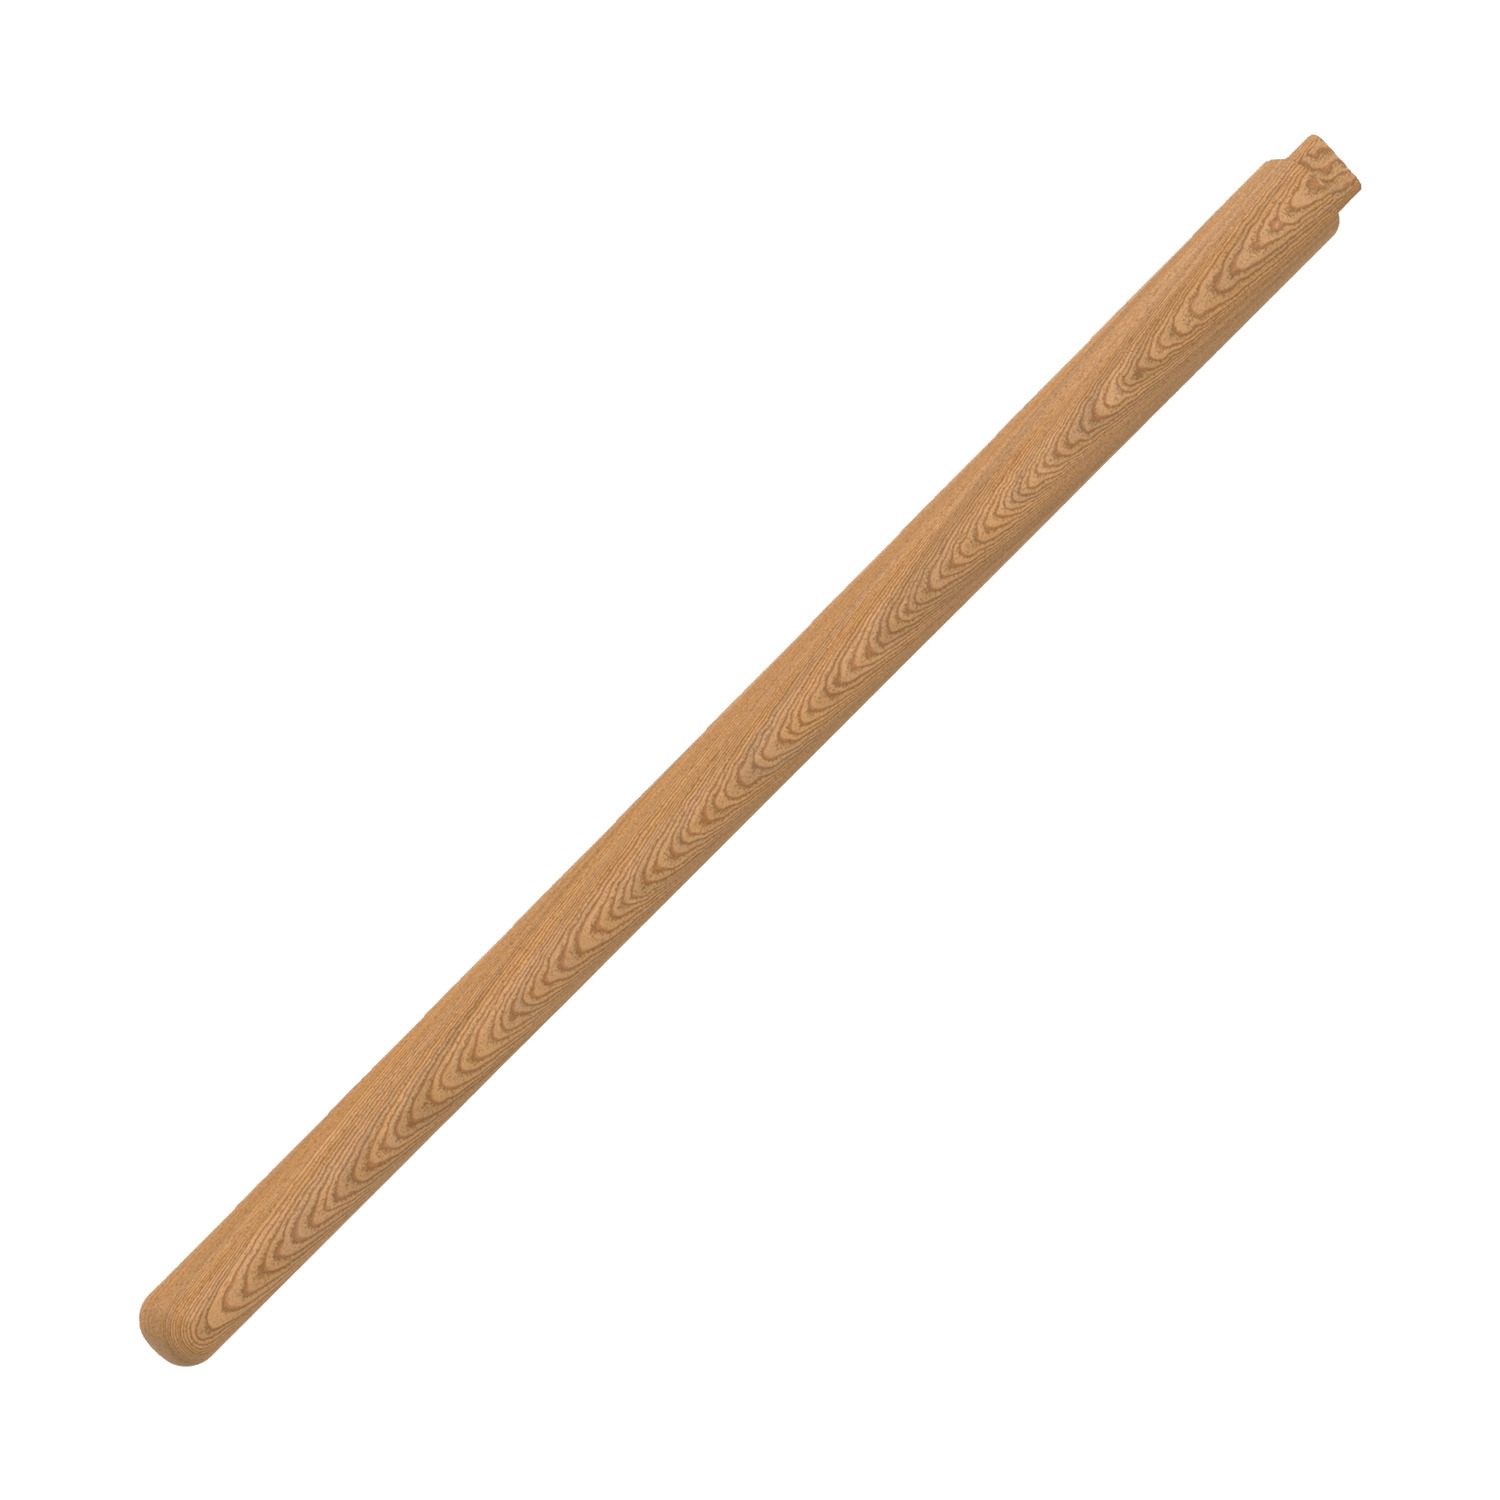 98362 - Handle - Non-Rebound Sledgehammer